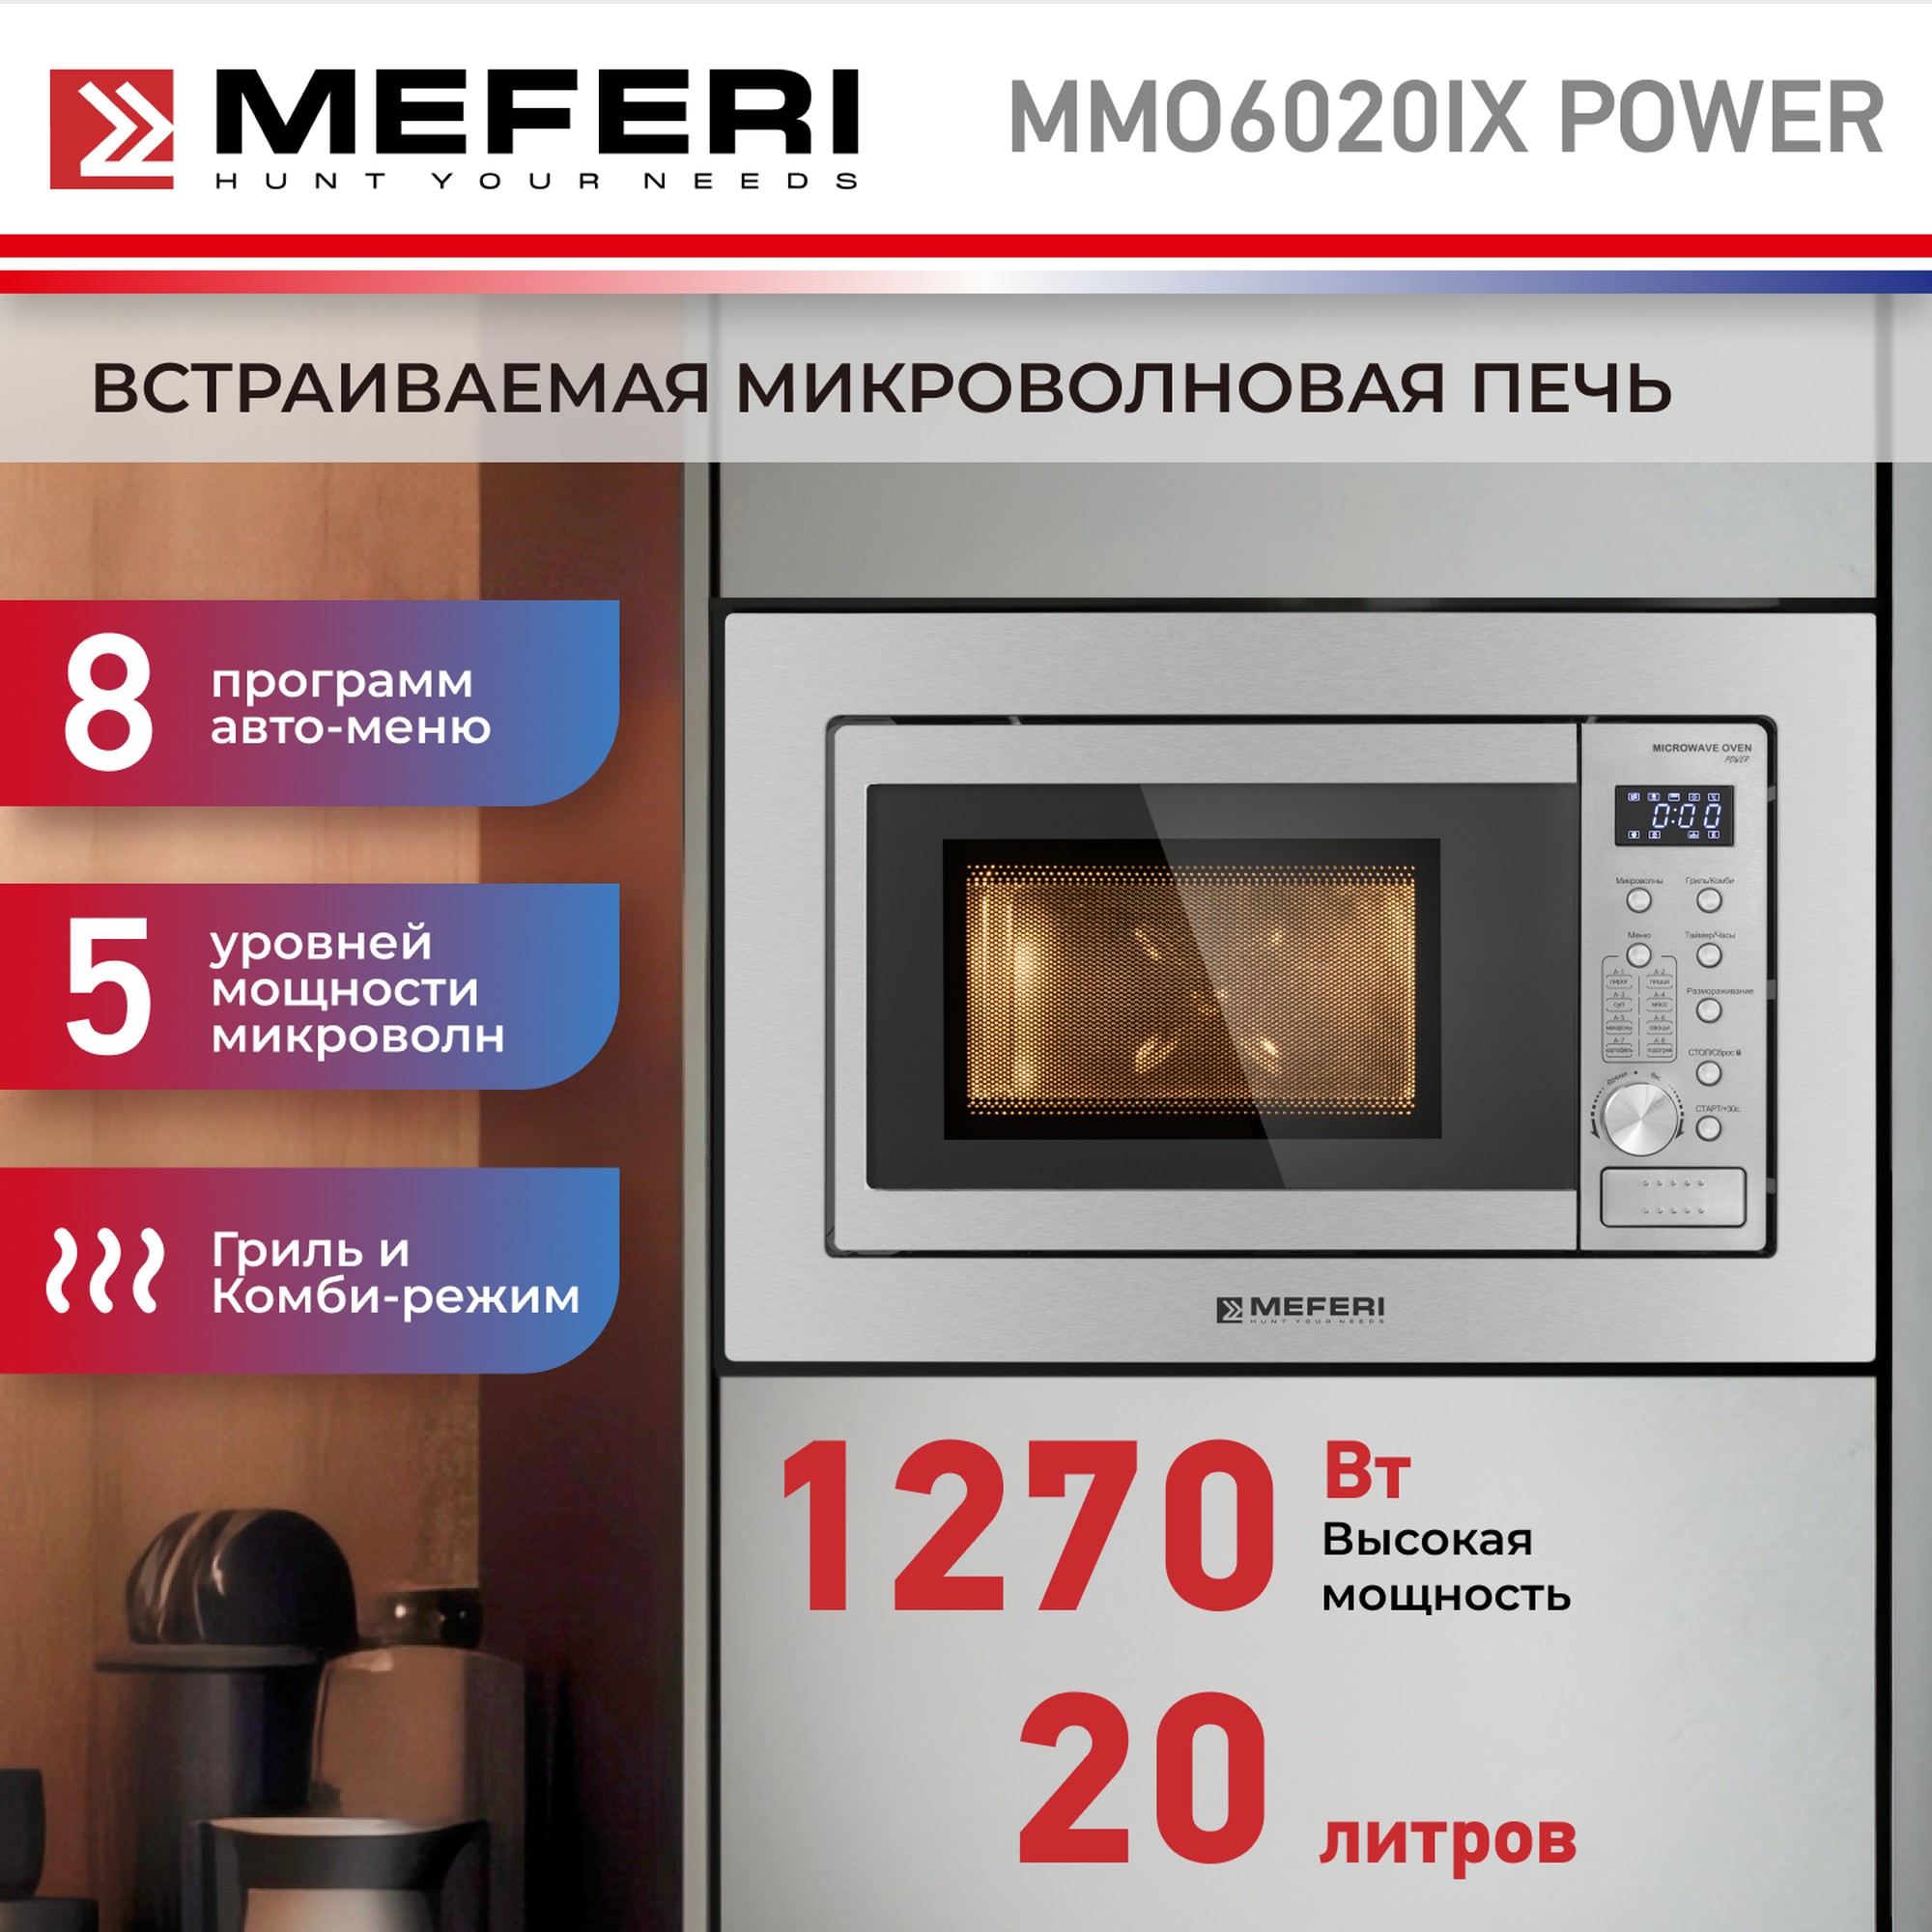 Встраиваемая микроволновая печь MEFERI MMO6020IX POWER